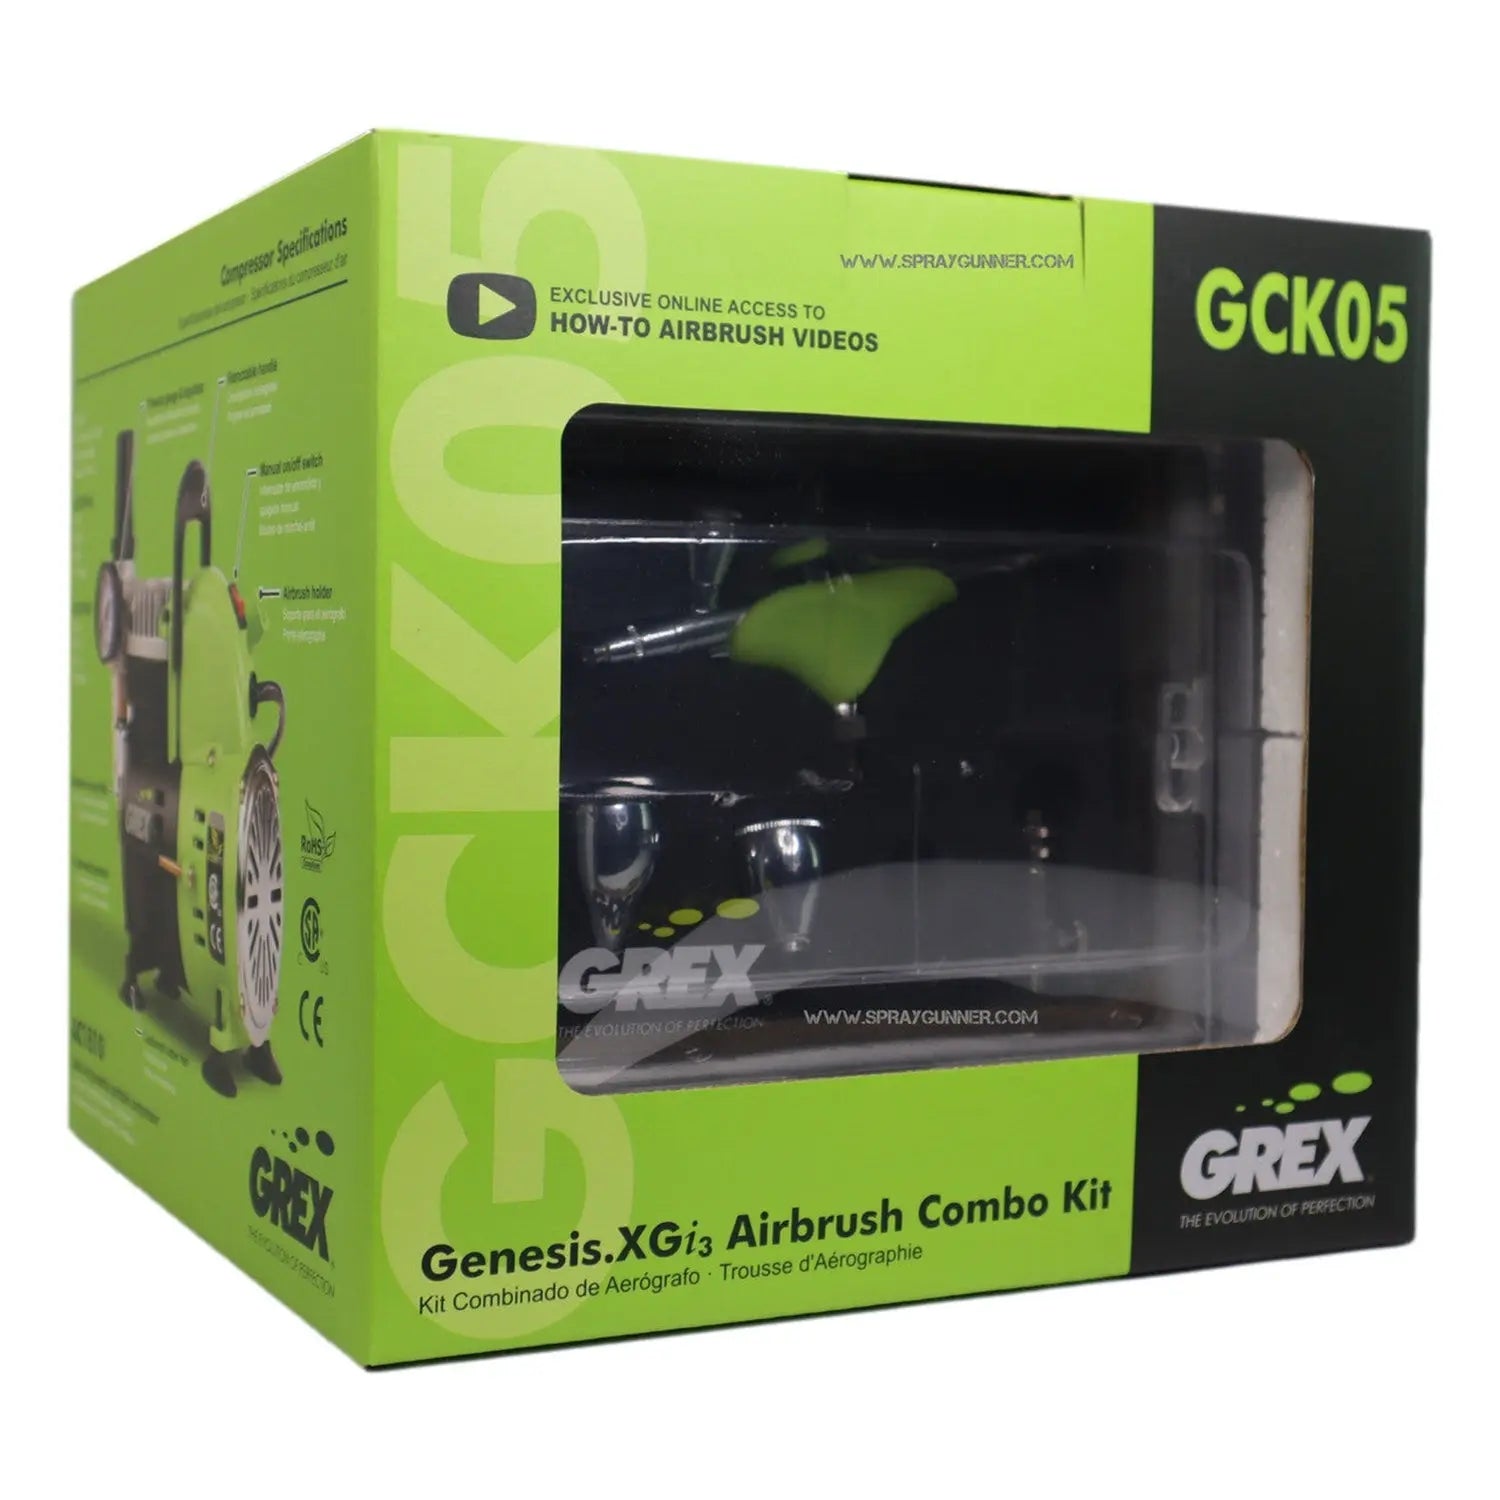 Grex Genesis.XGi.3 Airbrush Combo Kit GCK05 Grex Airbrush